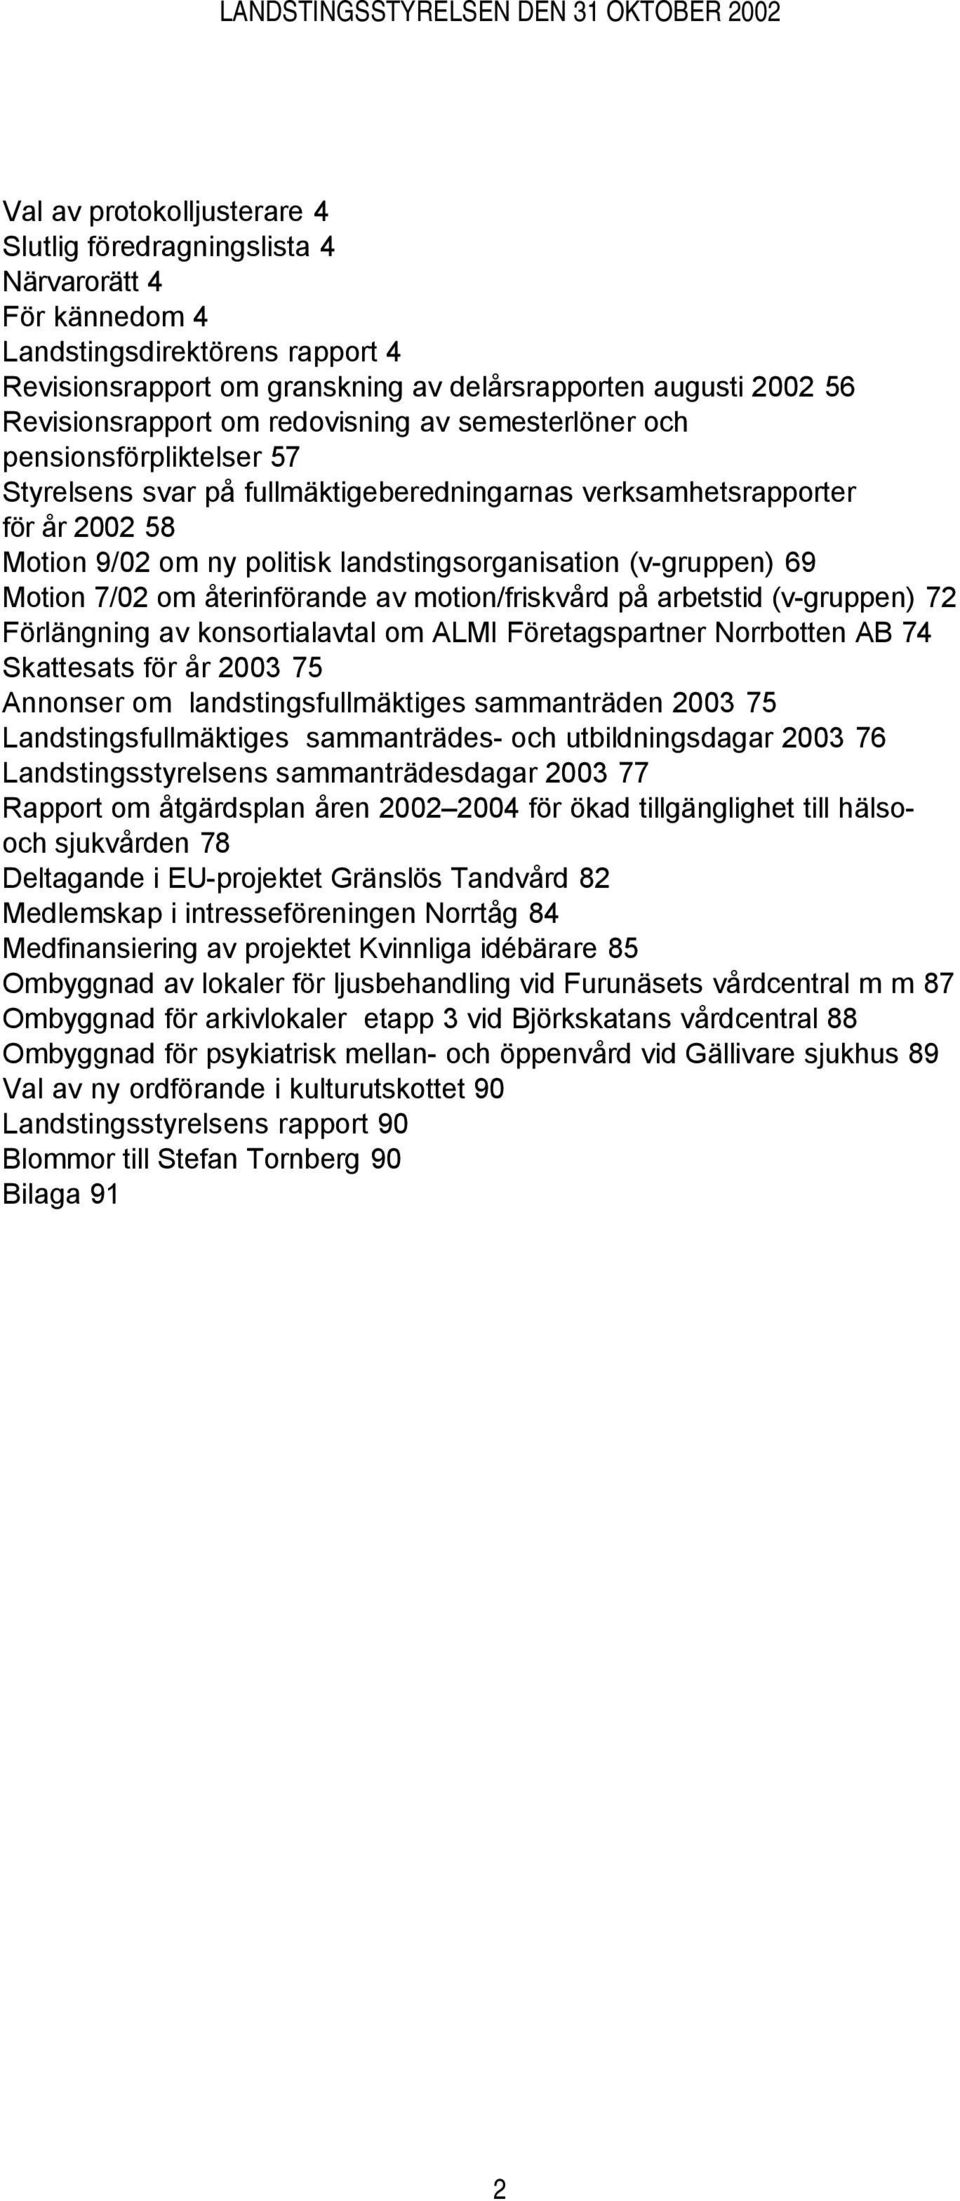 landstingsorganisation (v-gruppen) 69 Motion 7/02 om återinförande av motion/friskvård på arbetstid (v-gruppen) 72 Förlängning av konsortialavtal om ALMI Företagspartner Norrbotten AB 74 Skattesats